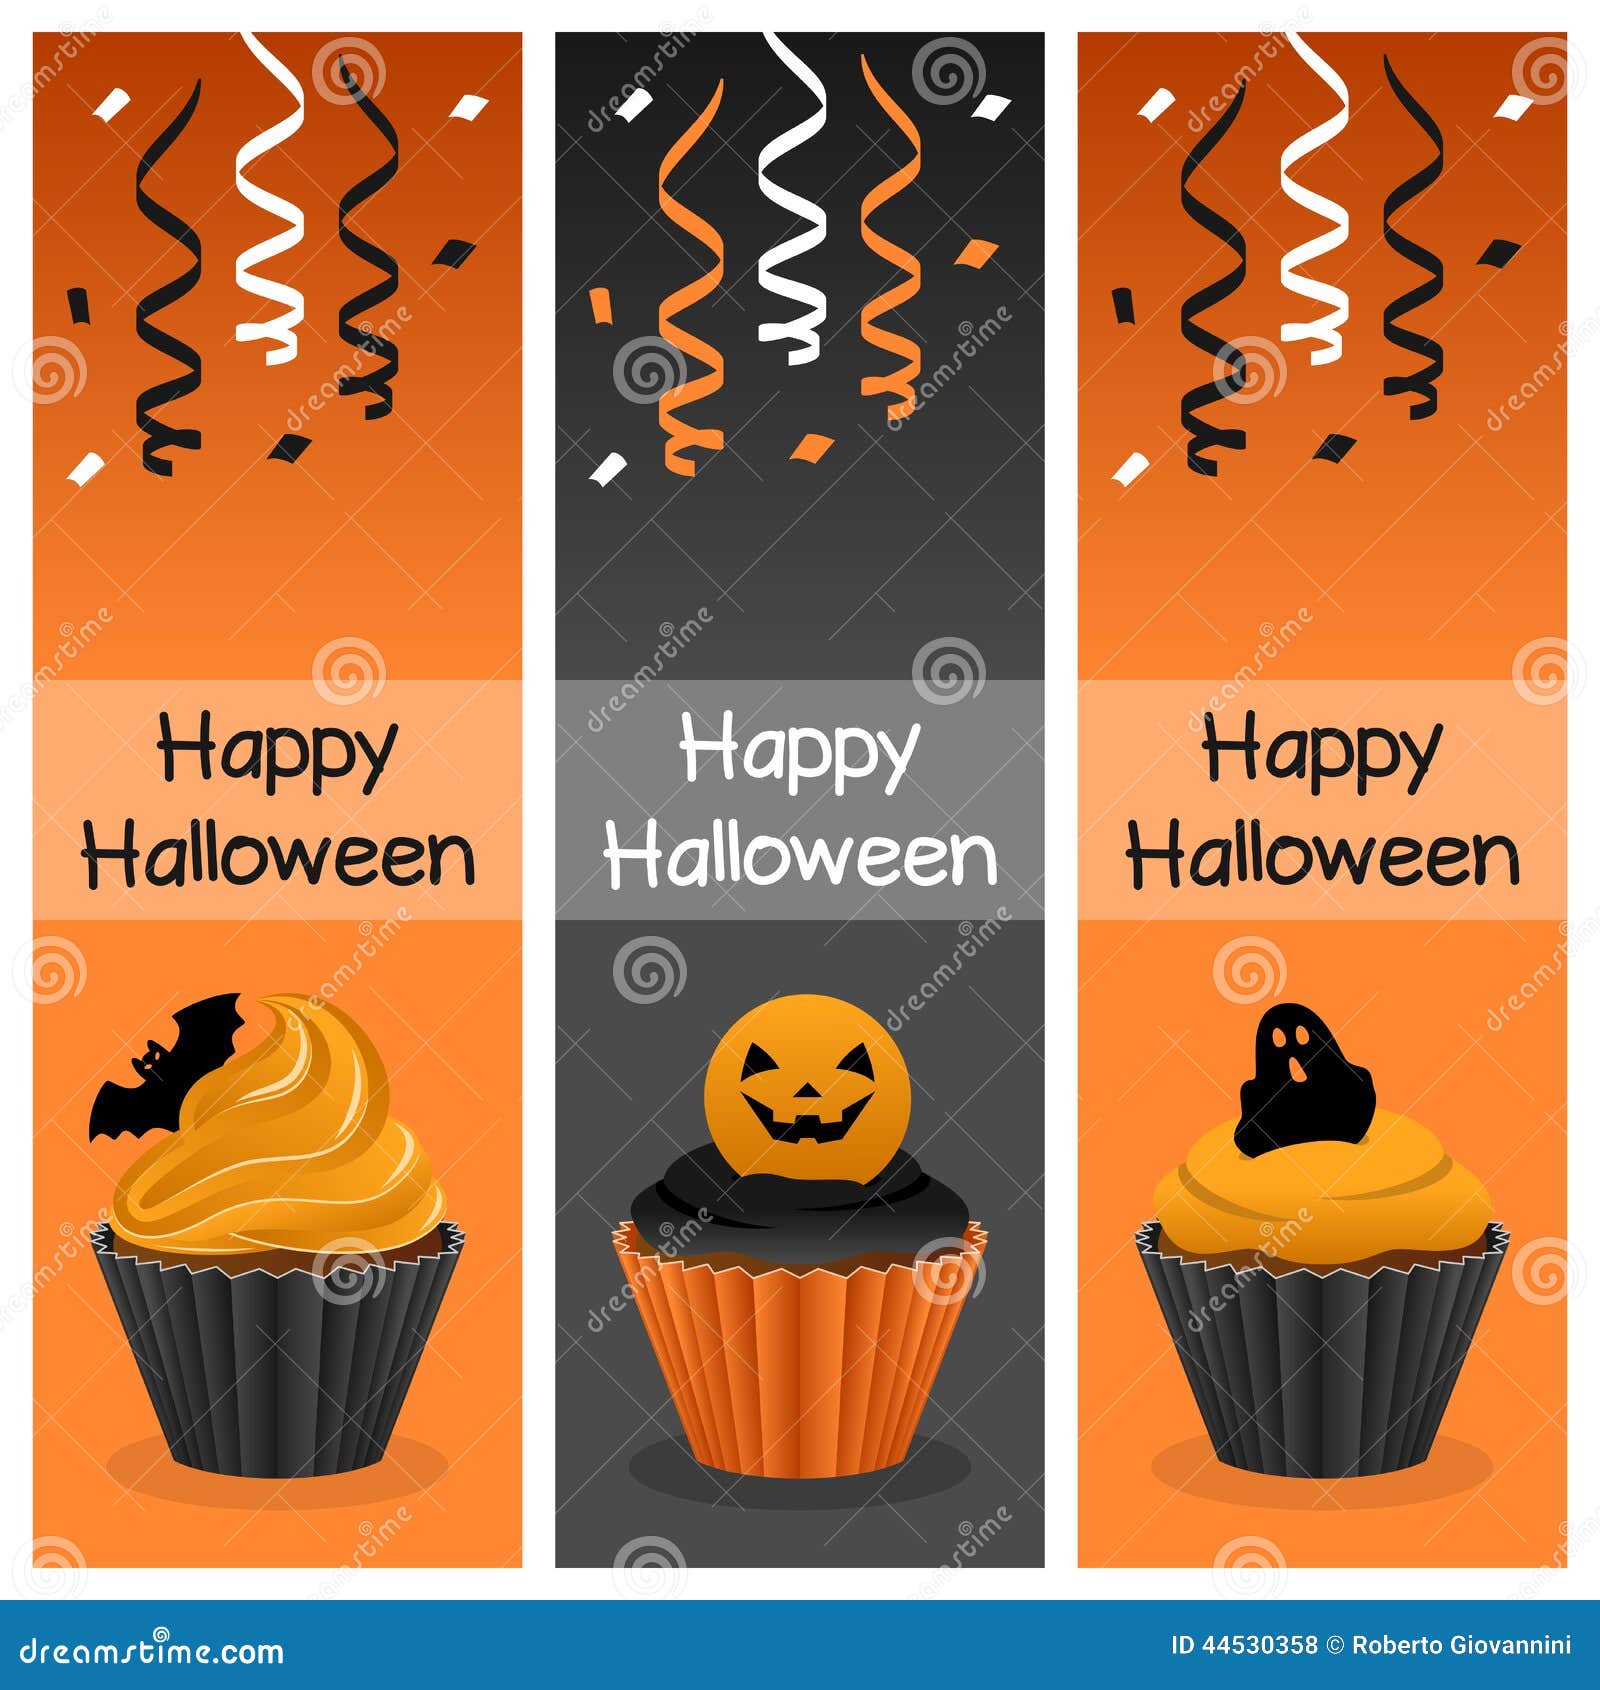 Download Halloween Cupcake Vertical Banners Stock Vector ...